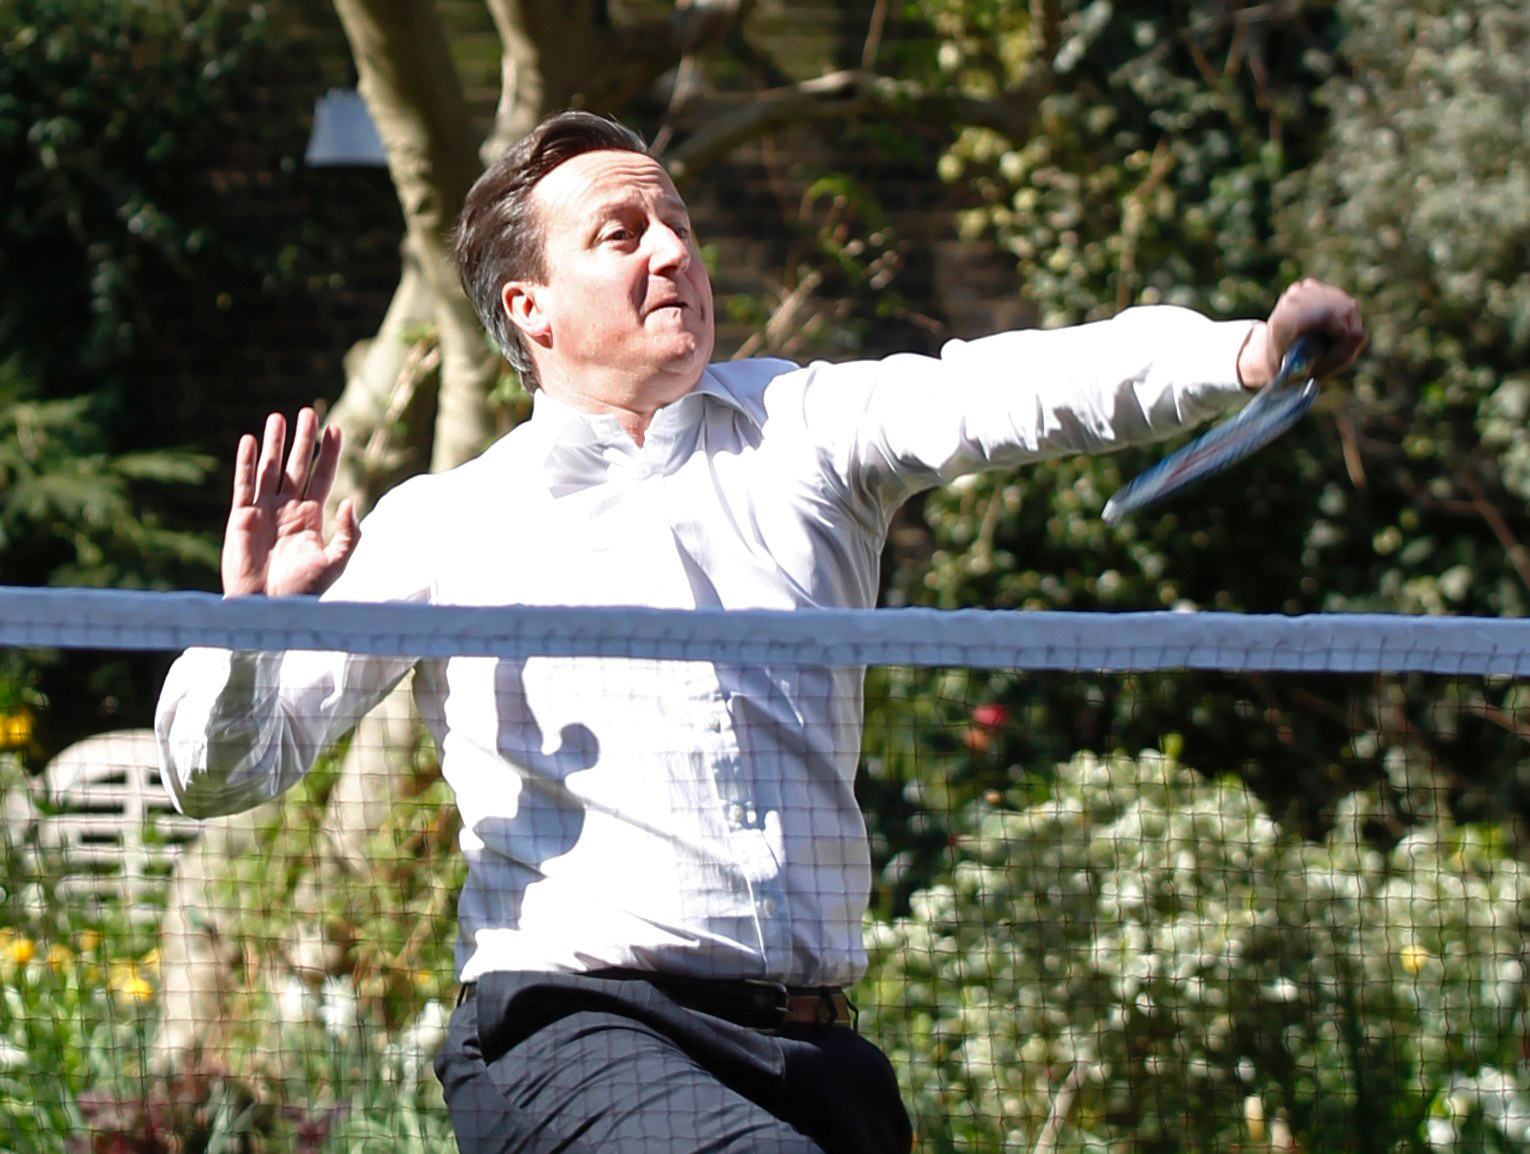 Cameron kämpar med balansen, att spela badminton i kostym är nog kanske inget att föredra?